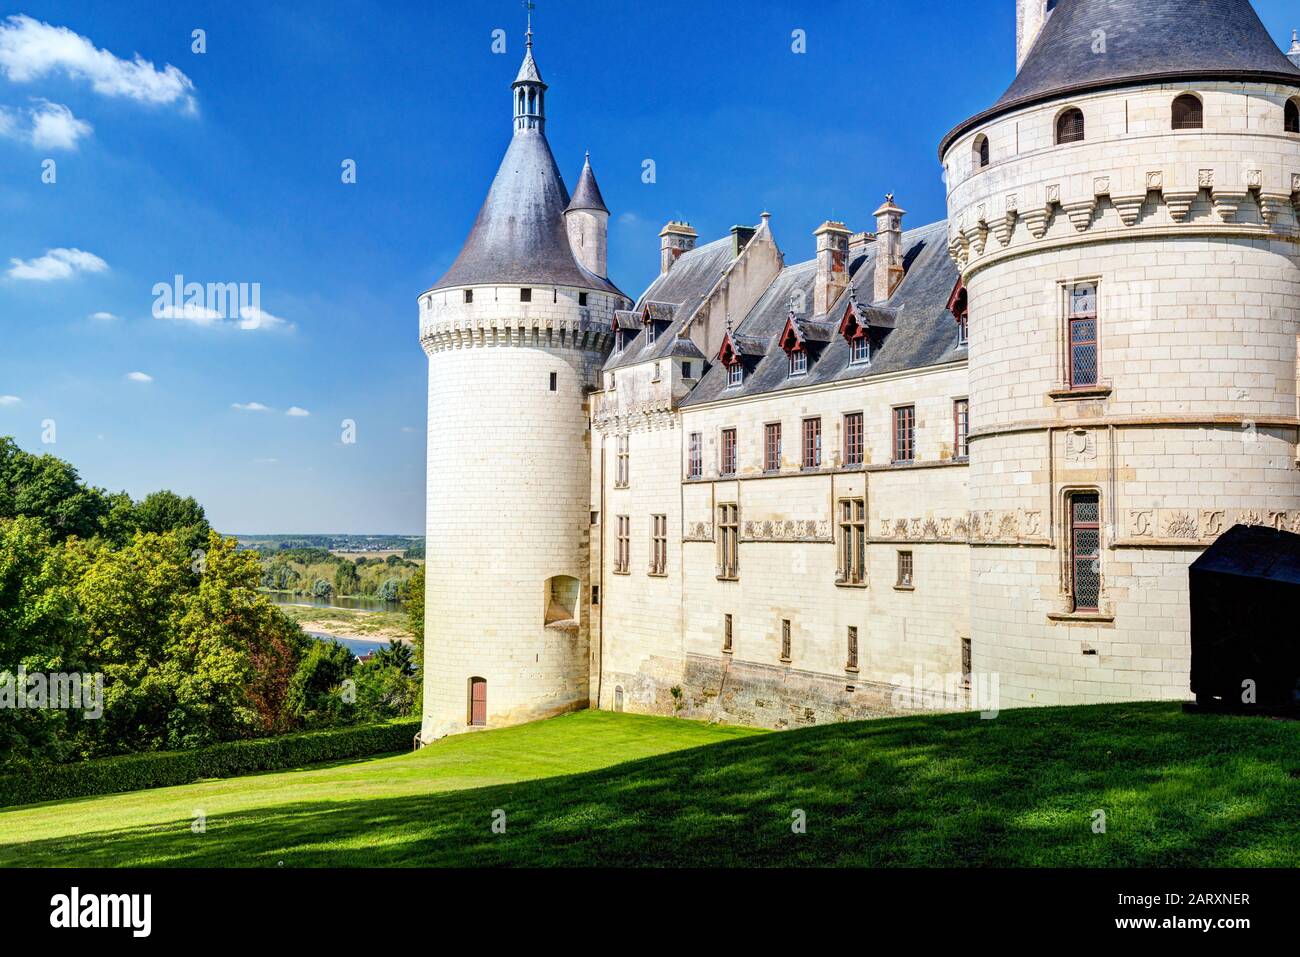 Chateau de Chaumont-sur-Loire, Francia. Este castillo está situado en el valle del Loira, fue fundado en el siglo 10 y fue reconstruido en el siglo 15 Foto de stock